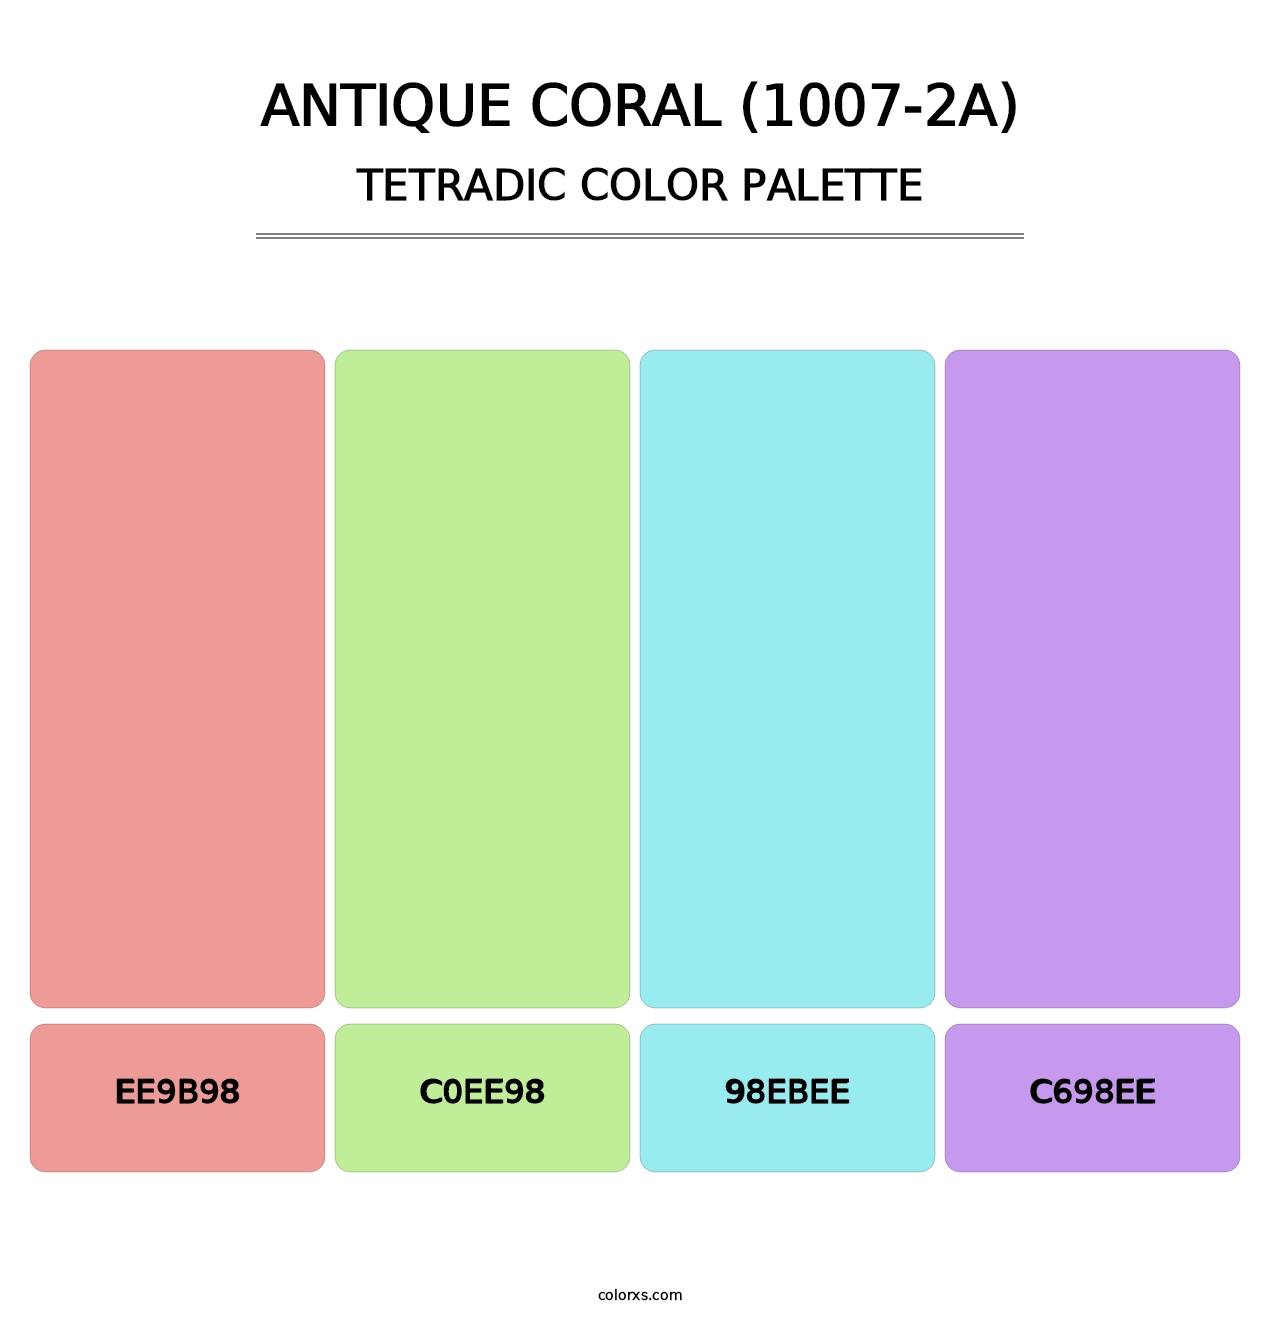 Antique Coral (1007-2A) - Tetradic Color Palette